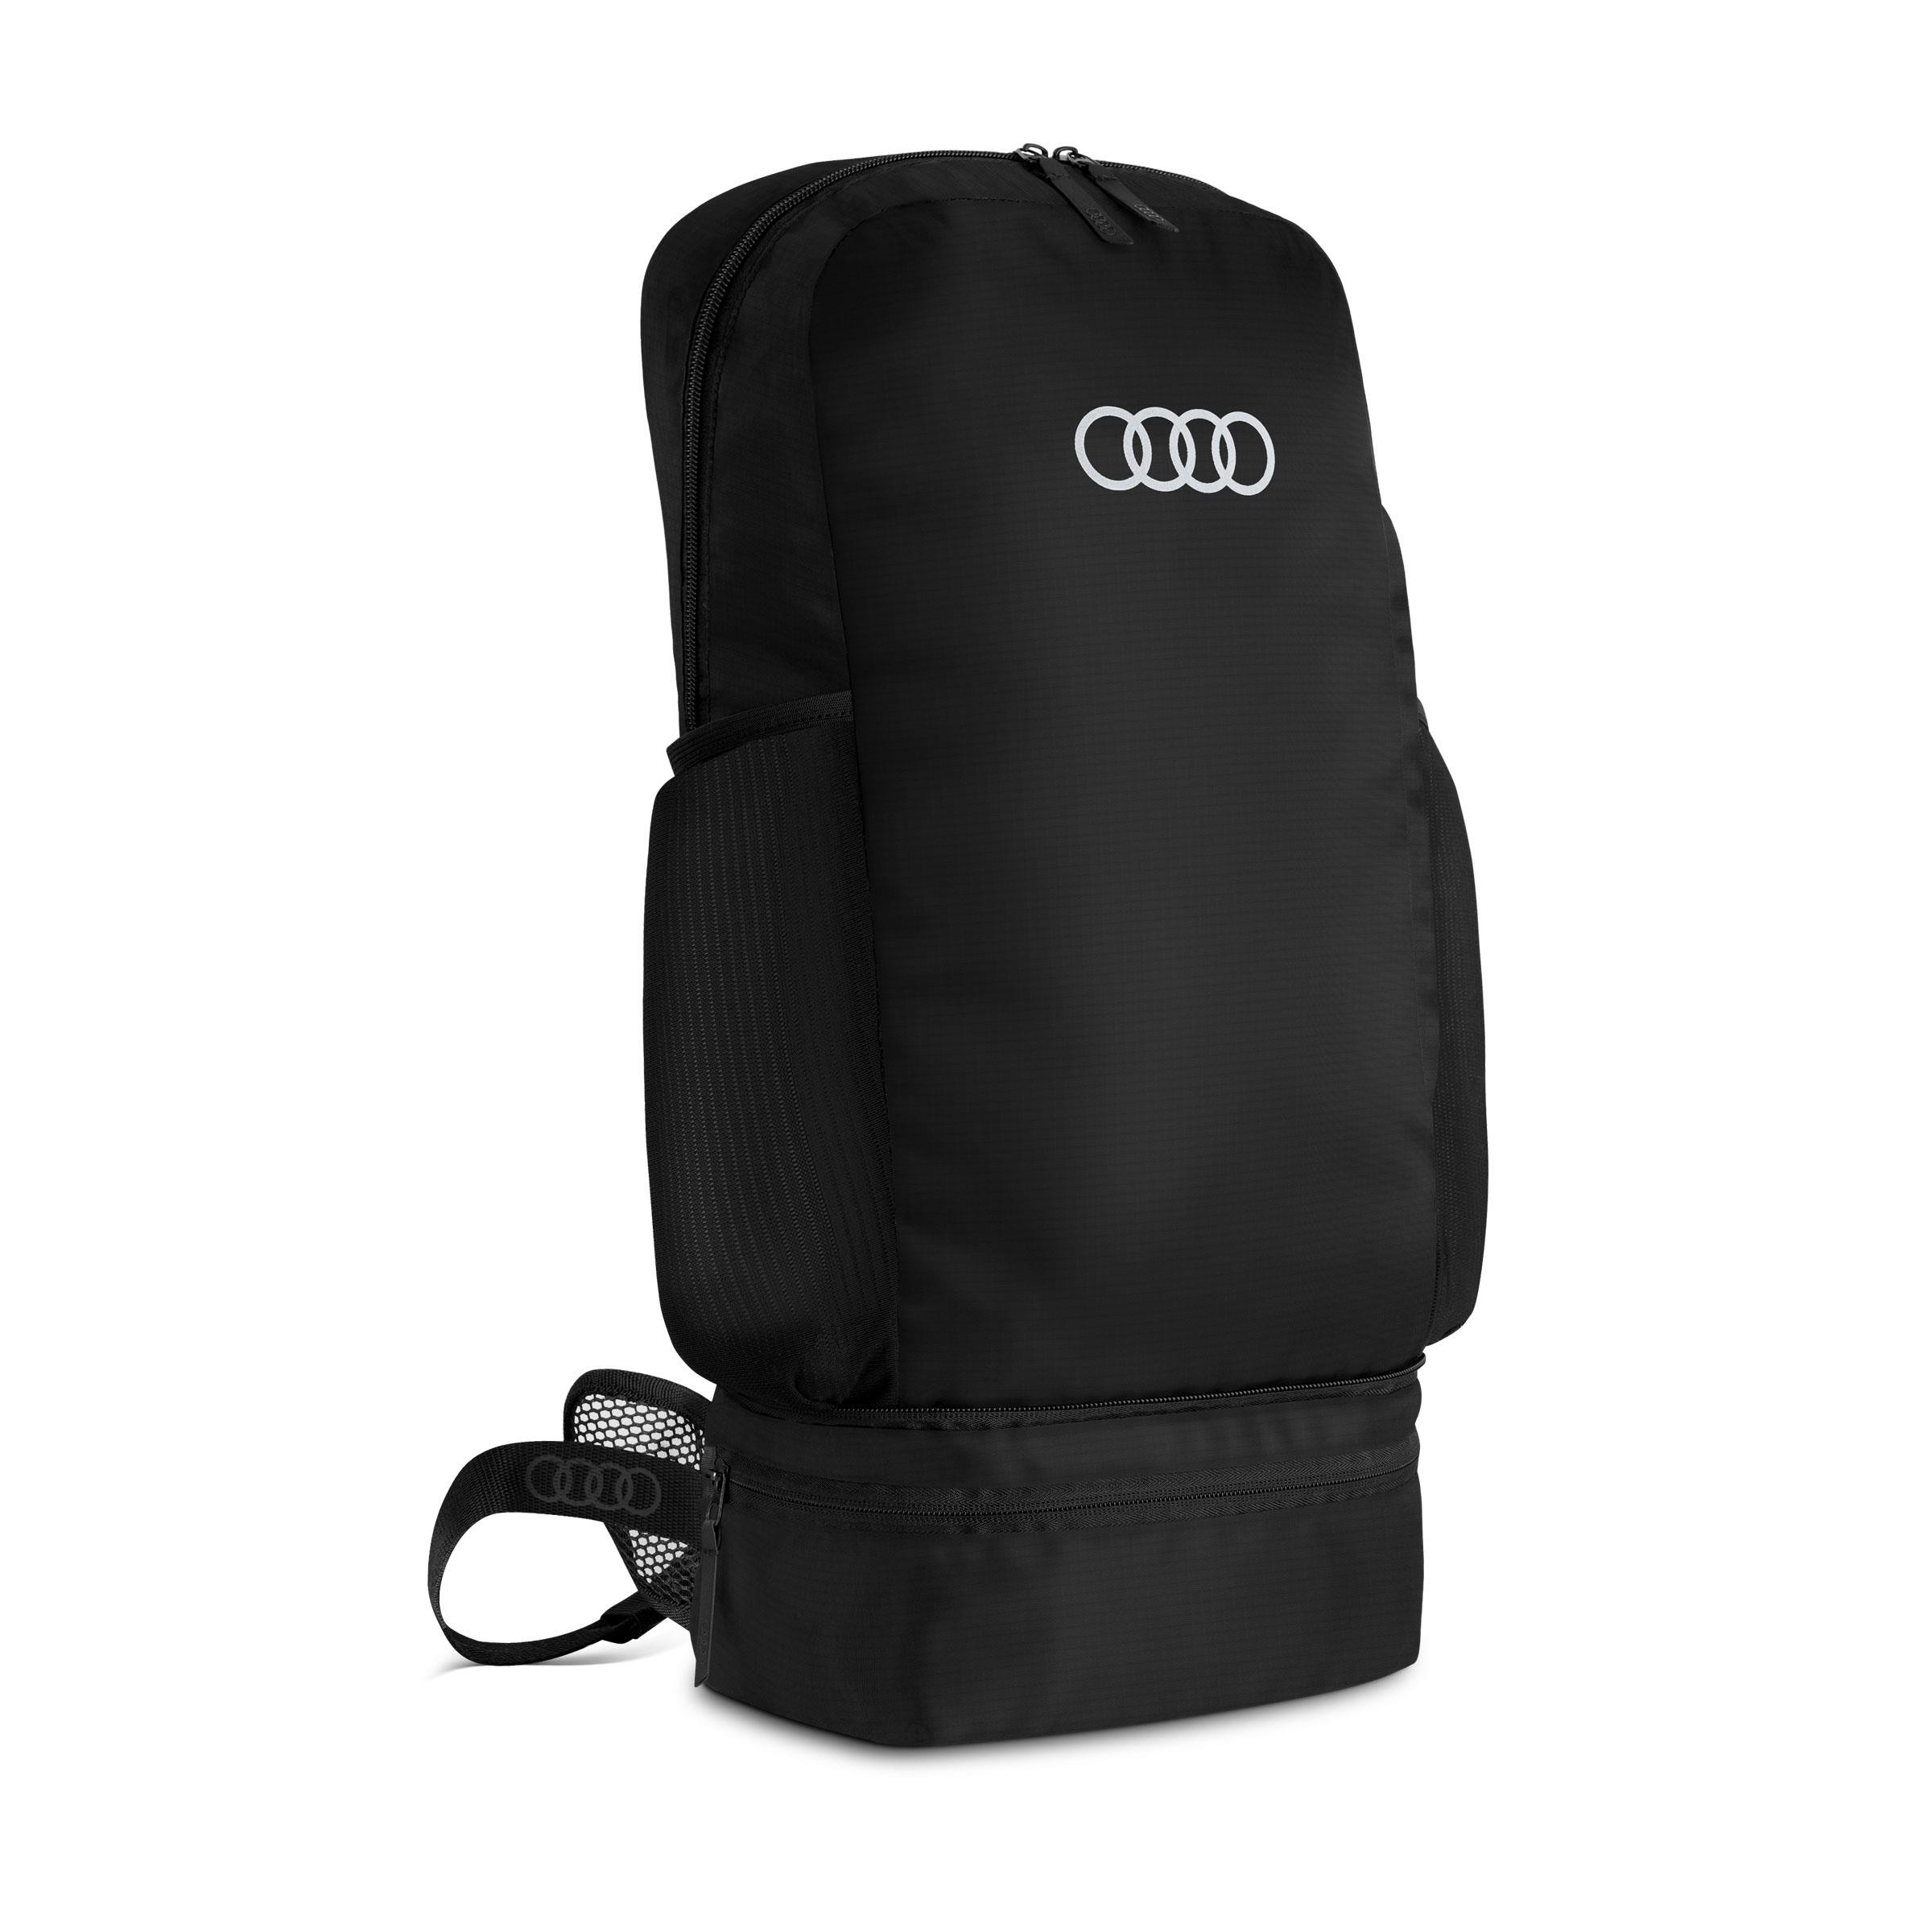 Audi Rucksack Umhängetasche Tasche Gürteltasche faltbar schwarz 